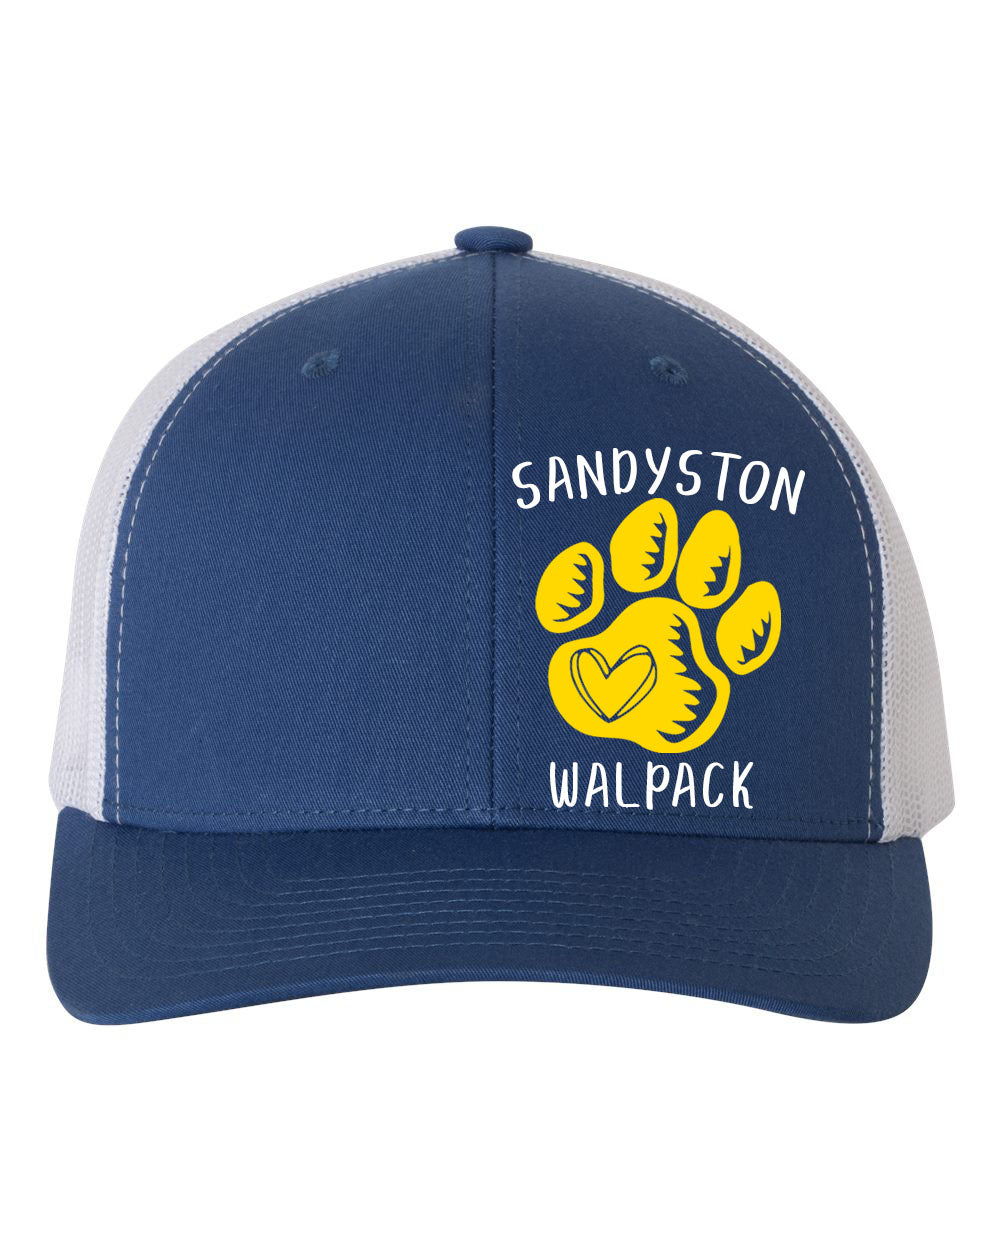 Sandyston Design 1 Trucker Hat